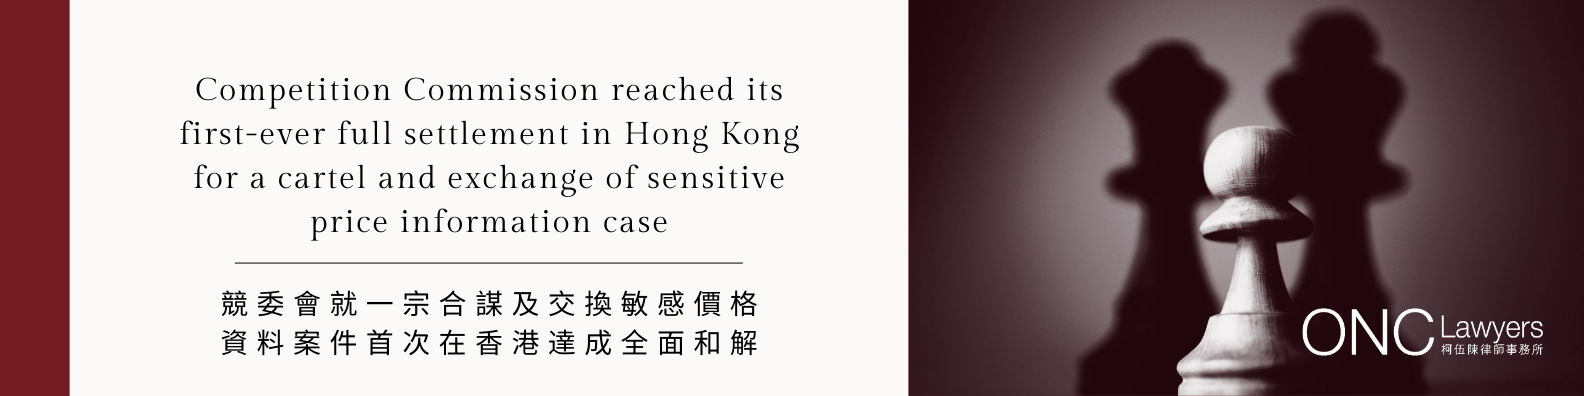 競委會就一宗合謀及交換敏感價格資料案件首次在香港達成全面和解